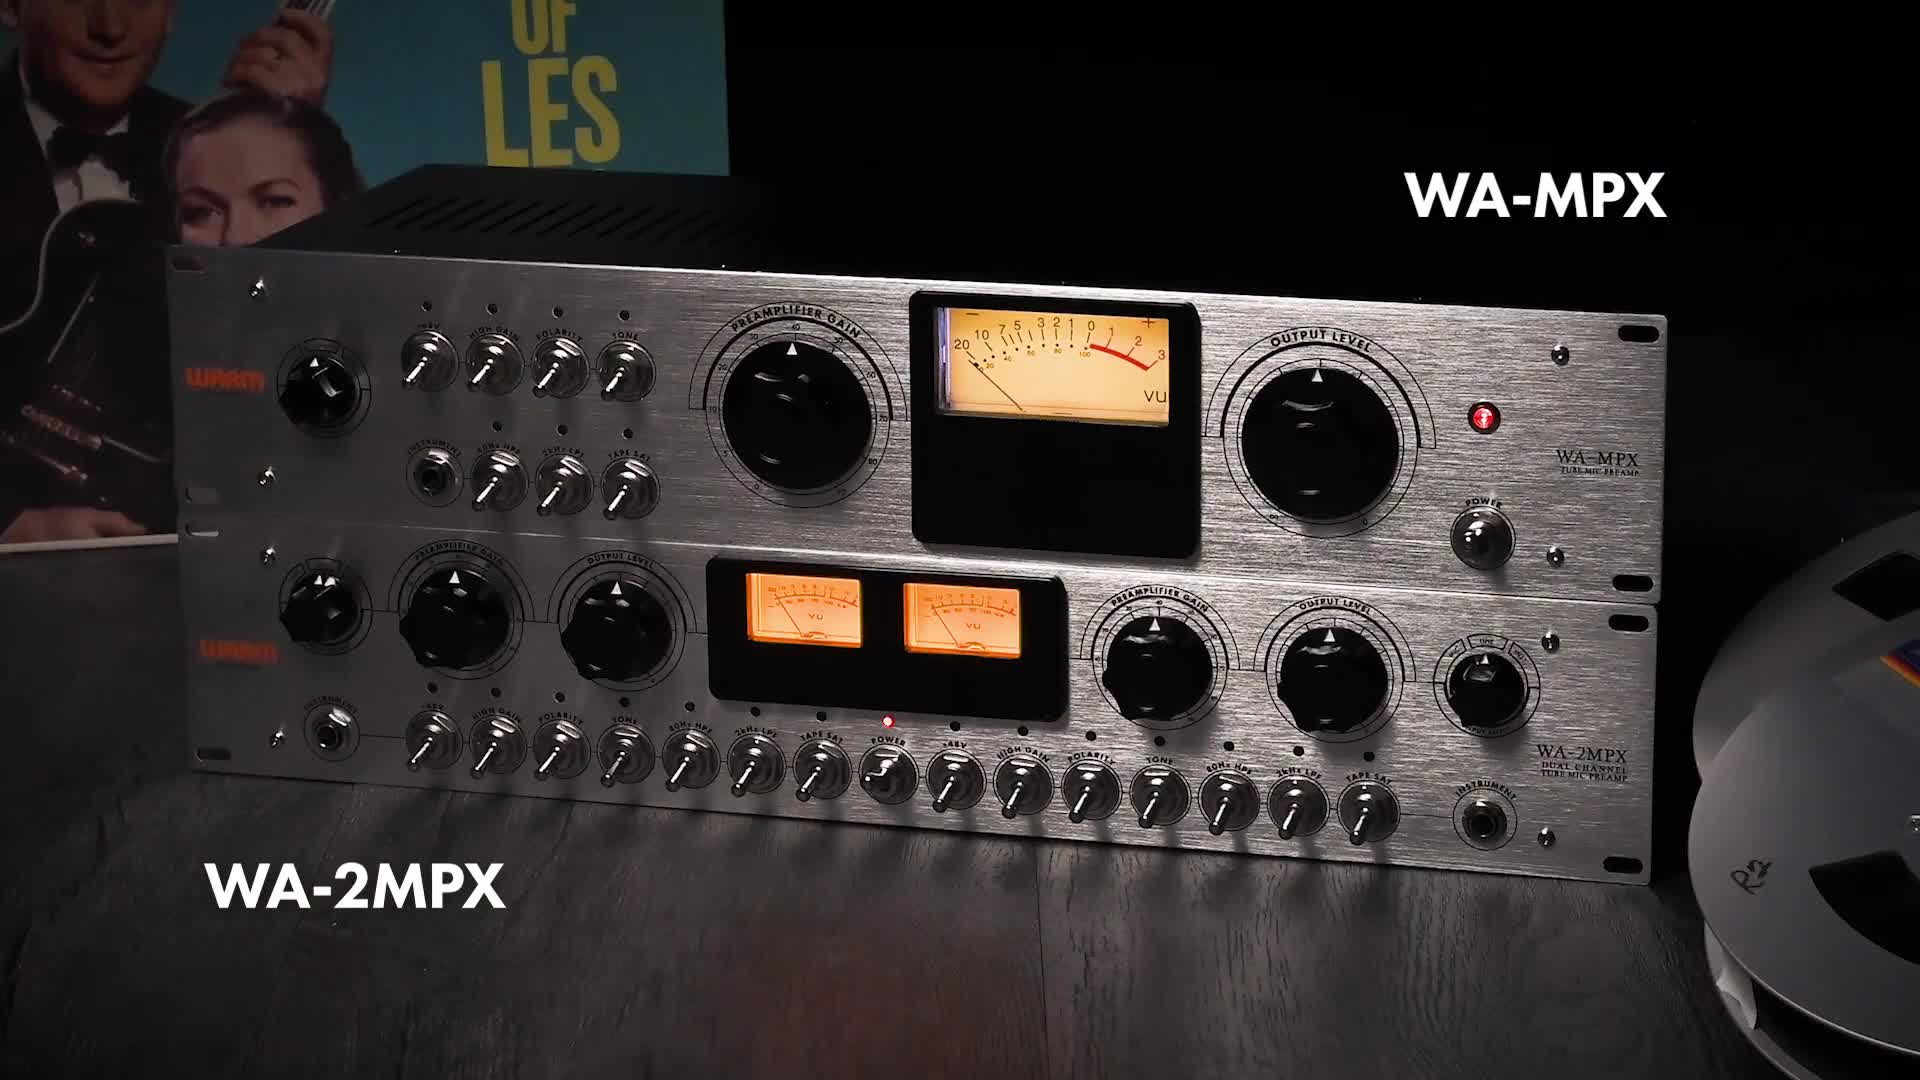 WAMPX 经典重现 磁带时代电子管话放